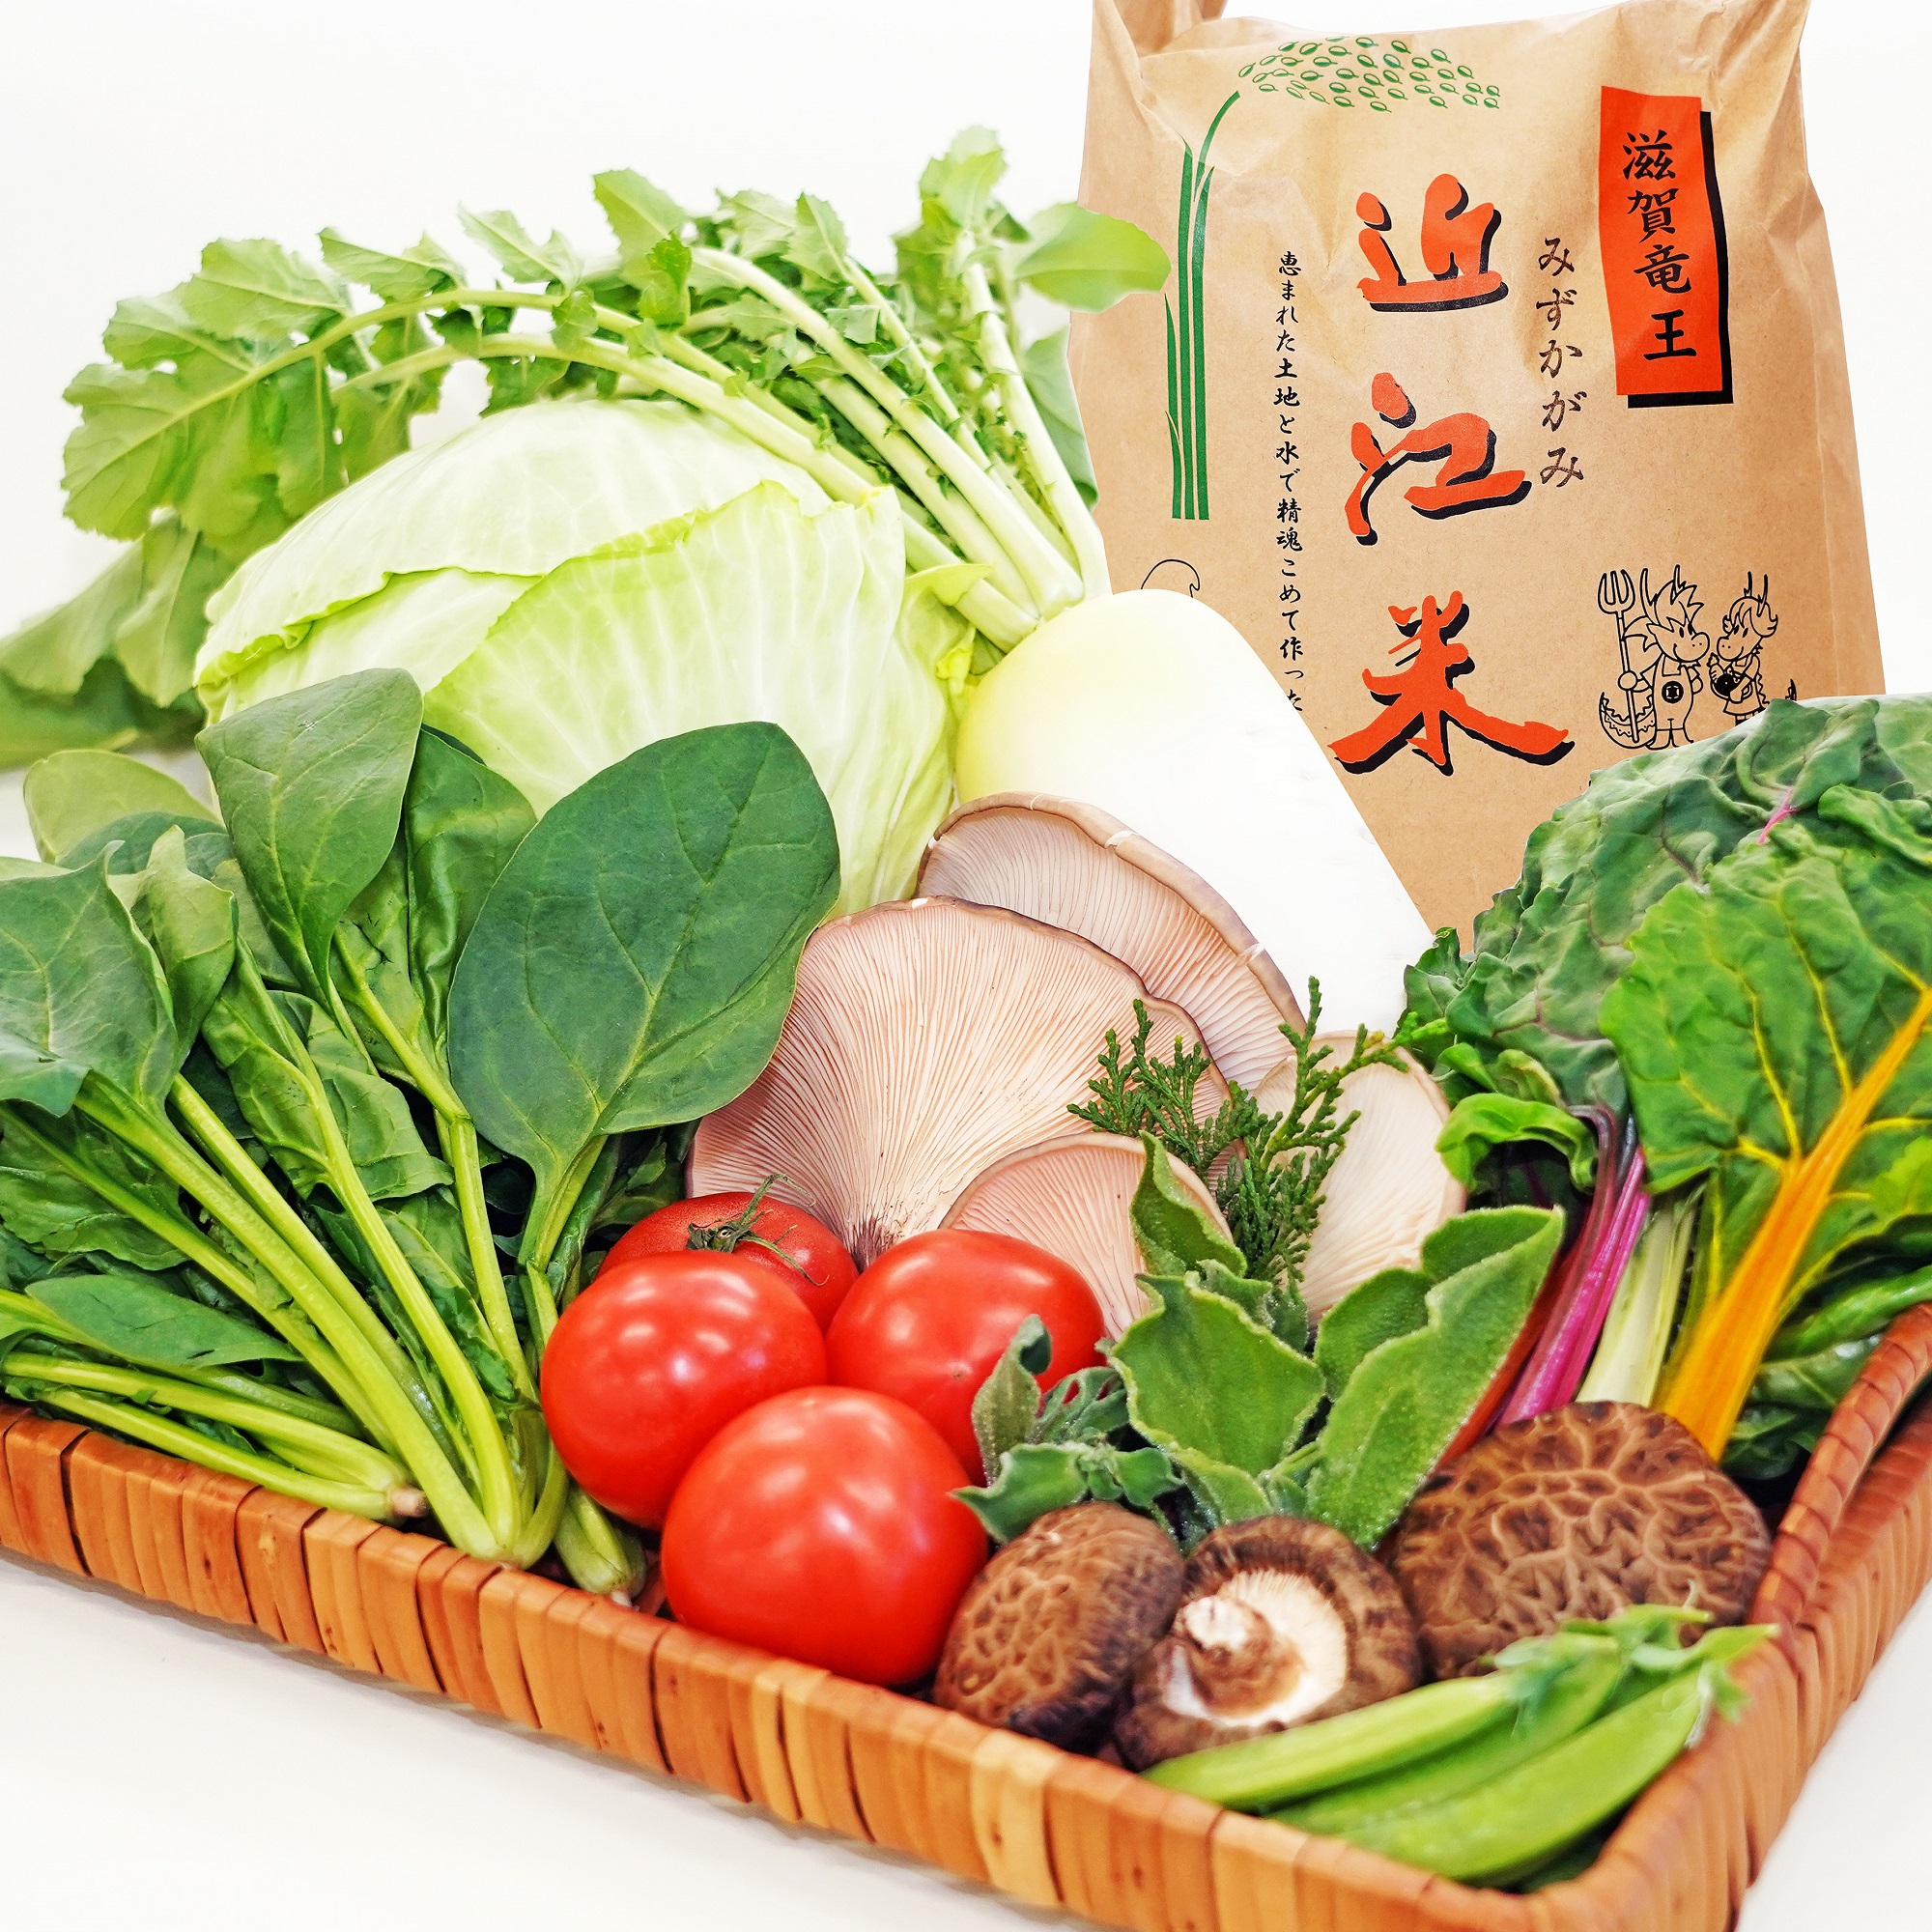 野菜ソムリエが選ぶ「竜王町産野菜&お米のセット」